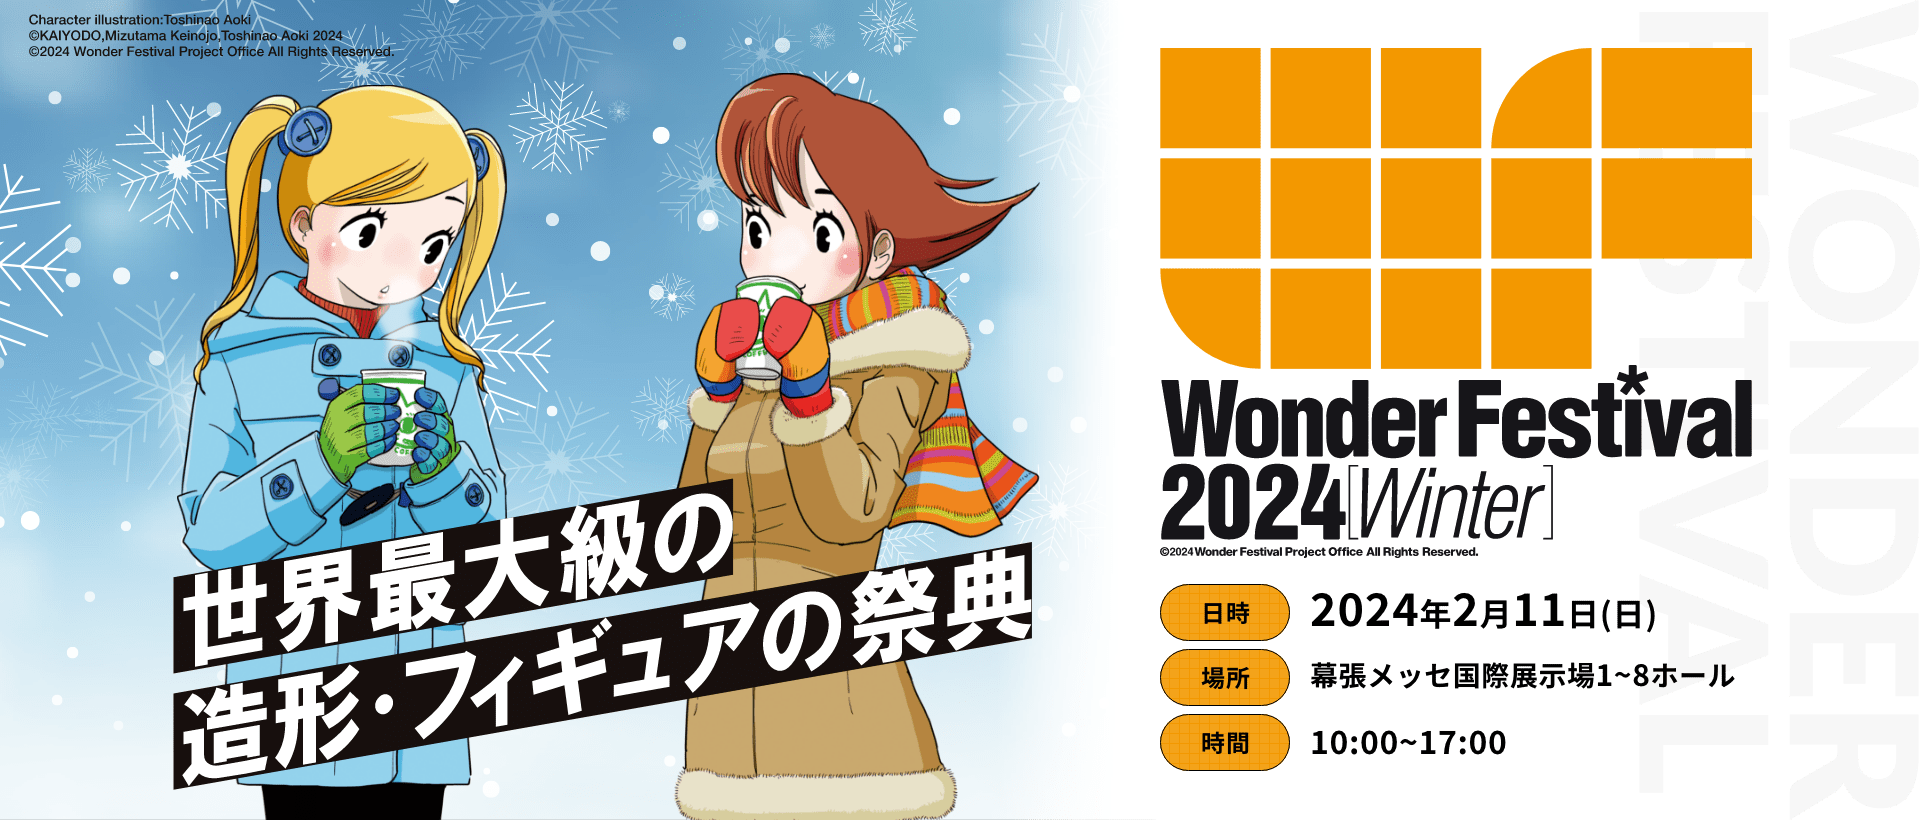 【情報】Wonder Festival 2024(冬) 2/11 展覽搜尋情報串 綜合公仔玩具討論區 哈啦板 巴哈姆特